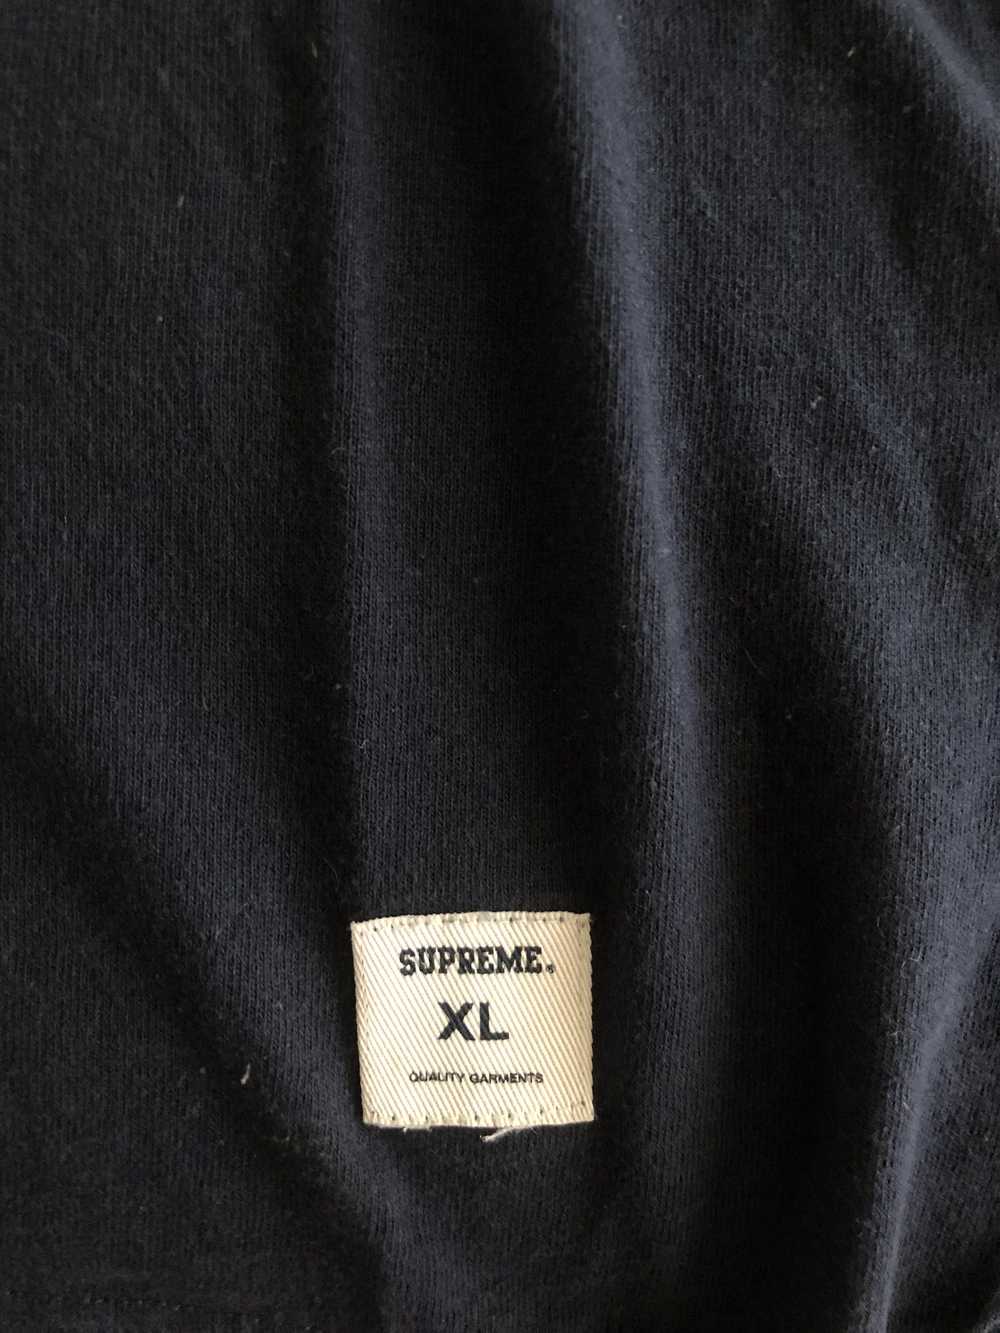 Supreme Football Shirt 09 - image 3